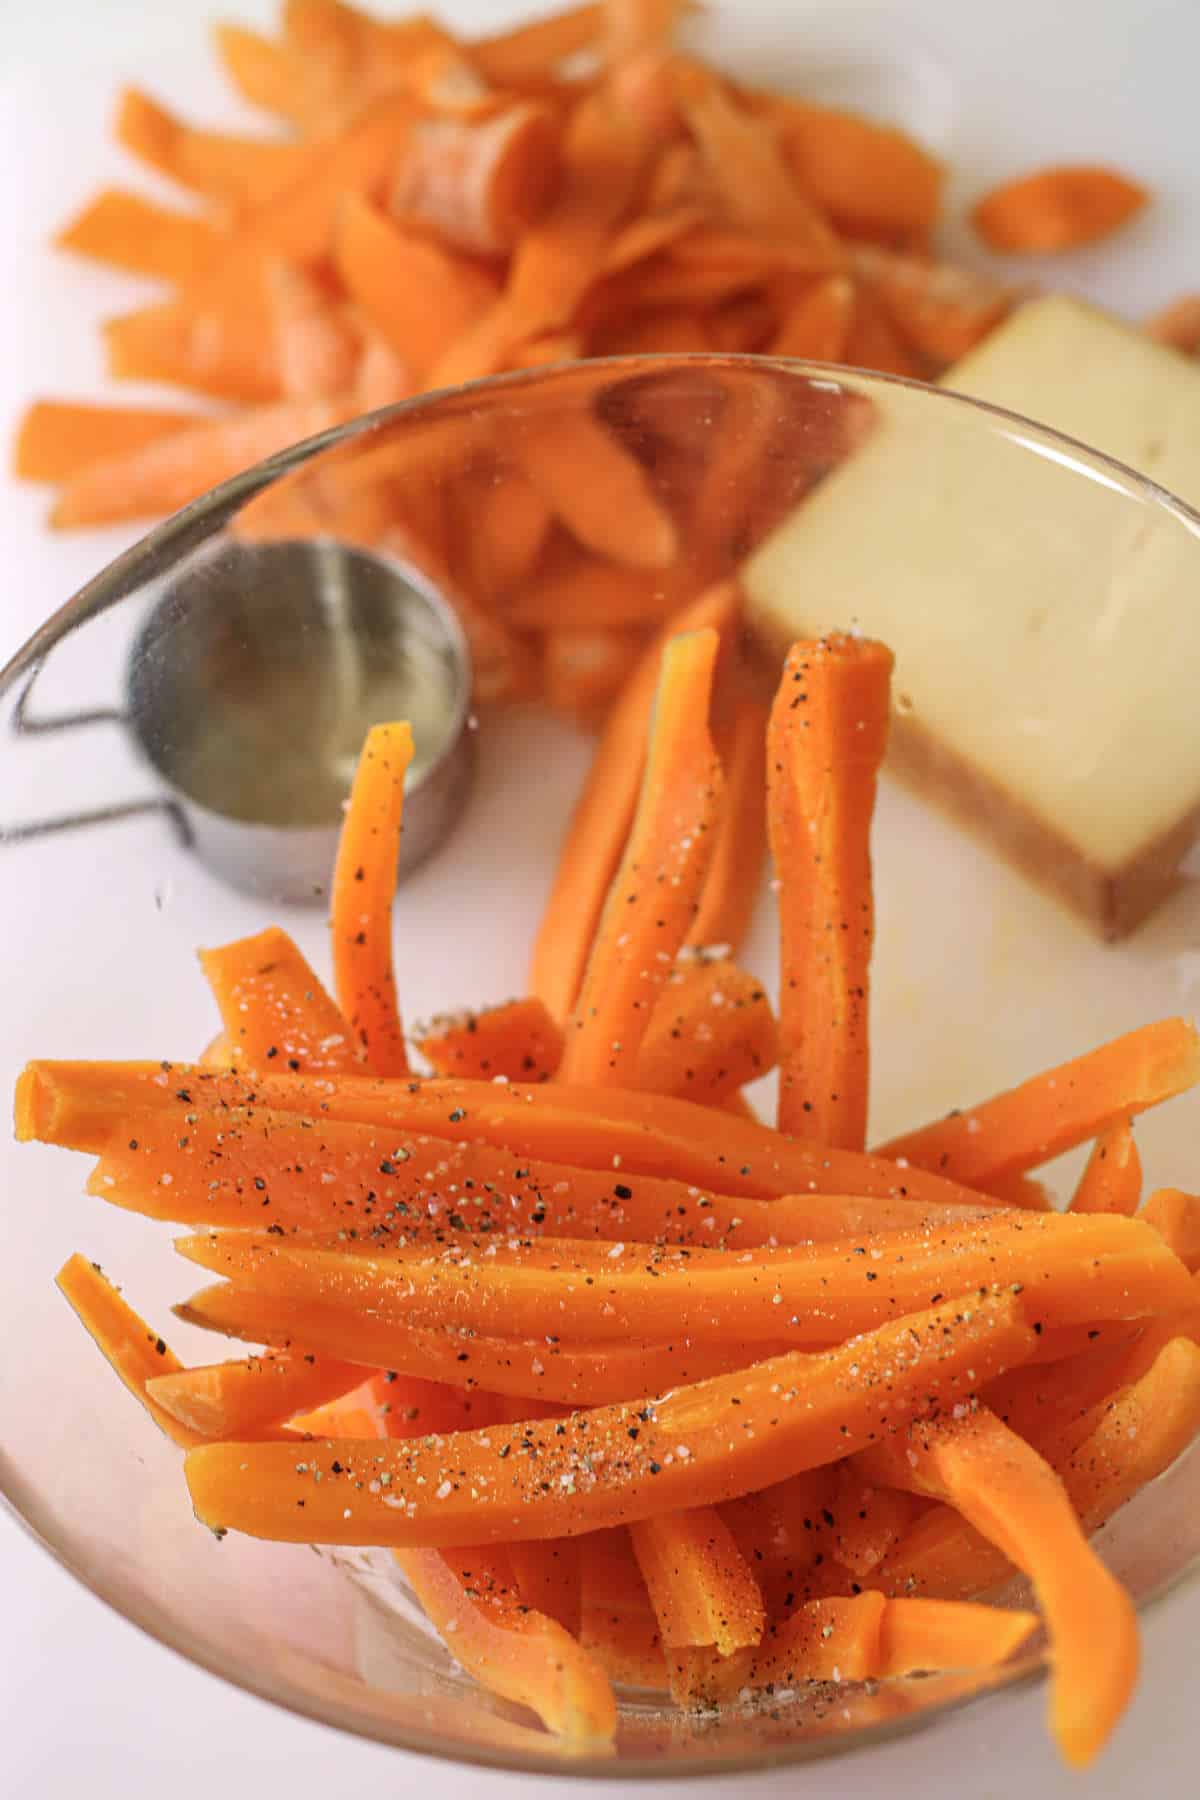 seasoned carrots in a bowl.